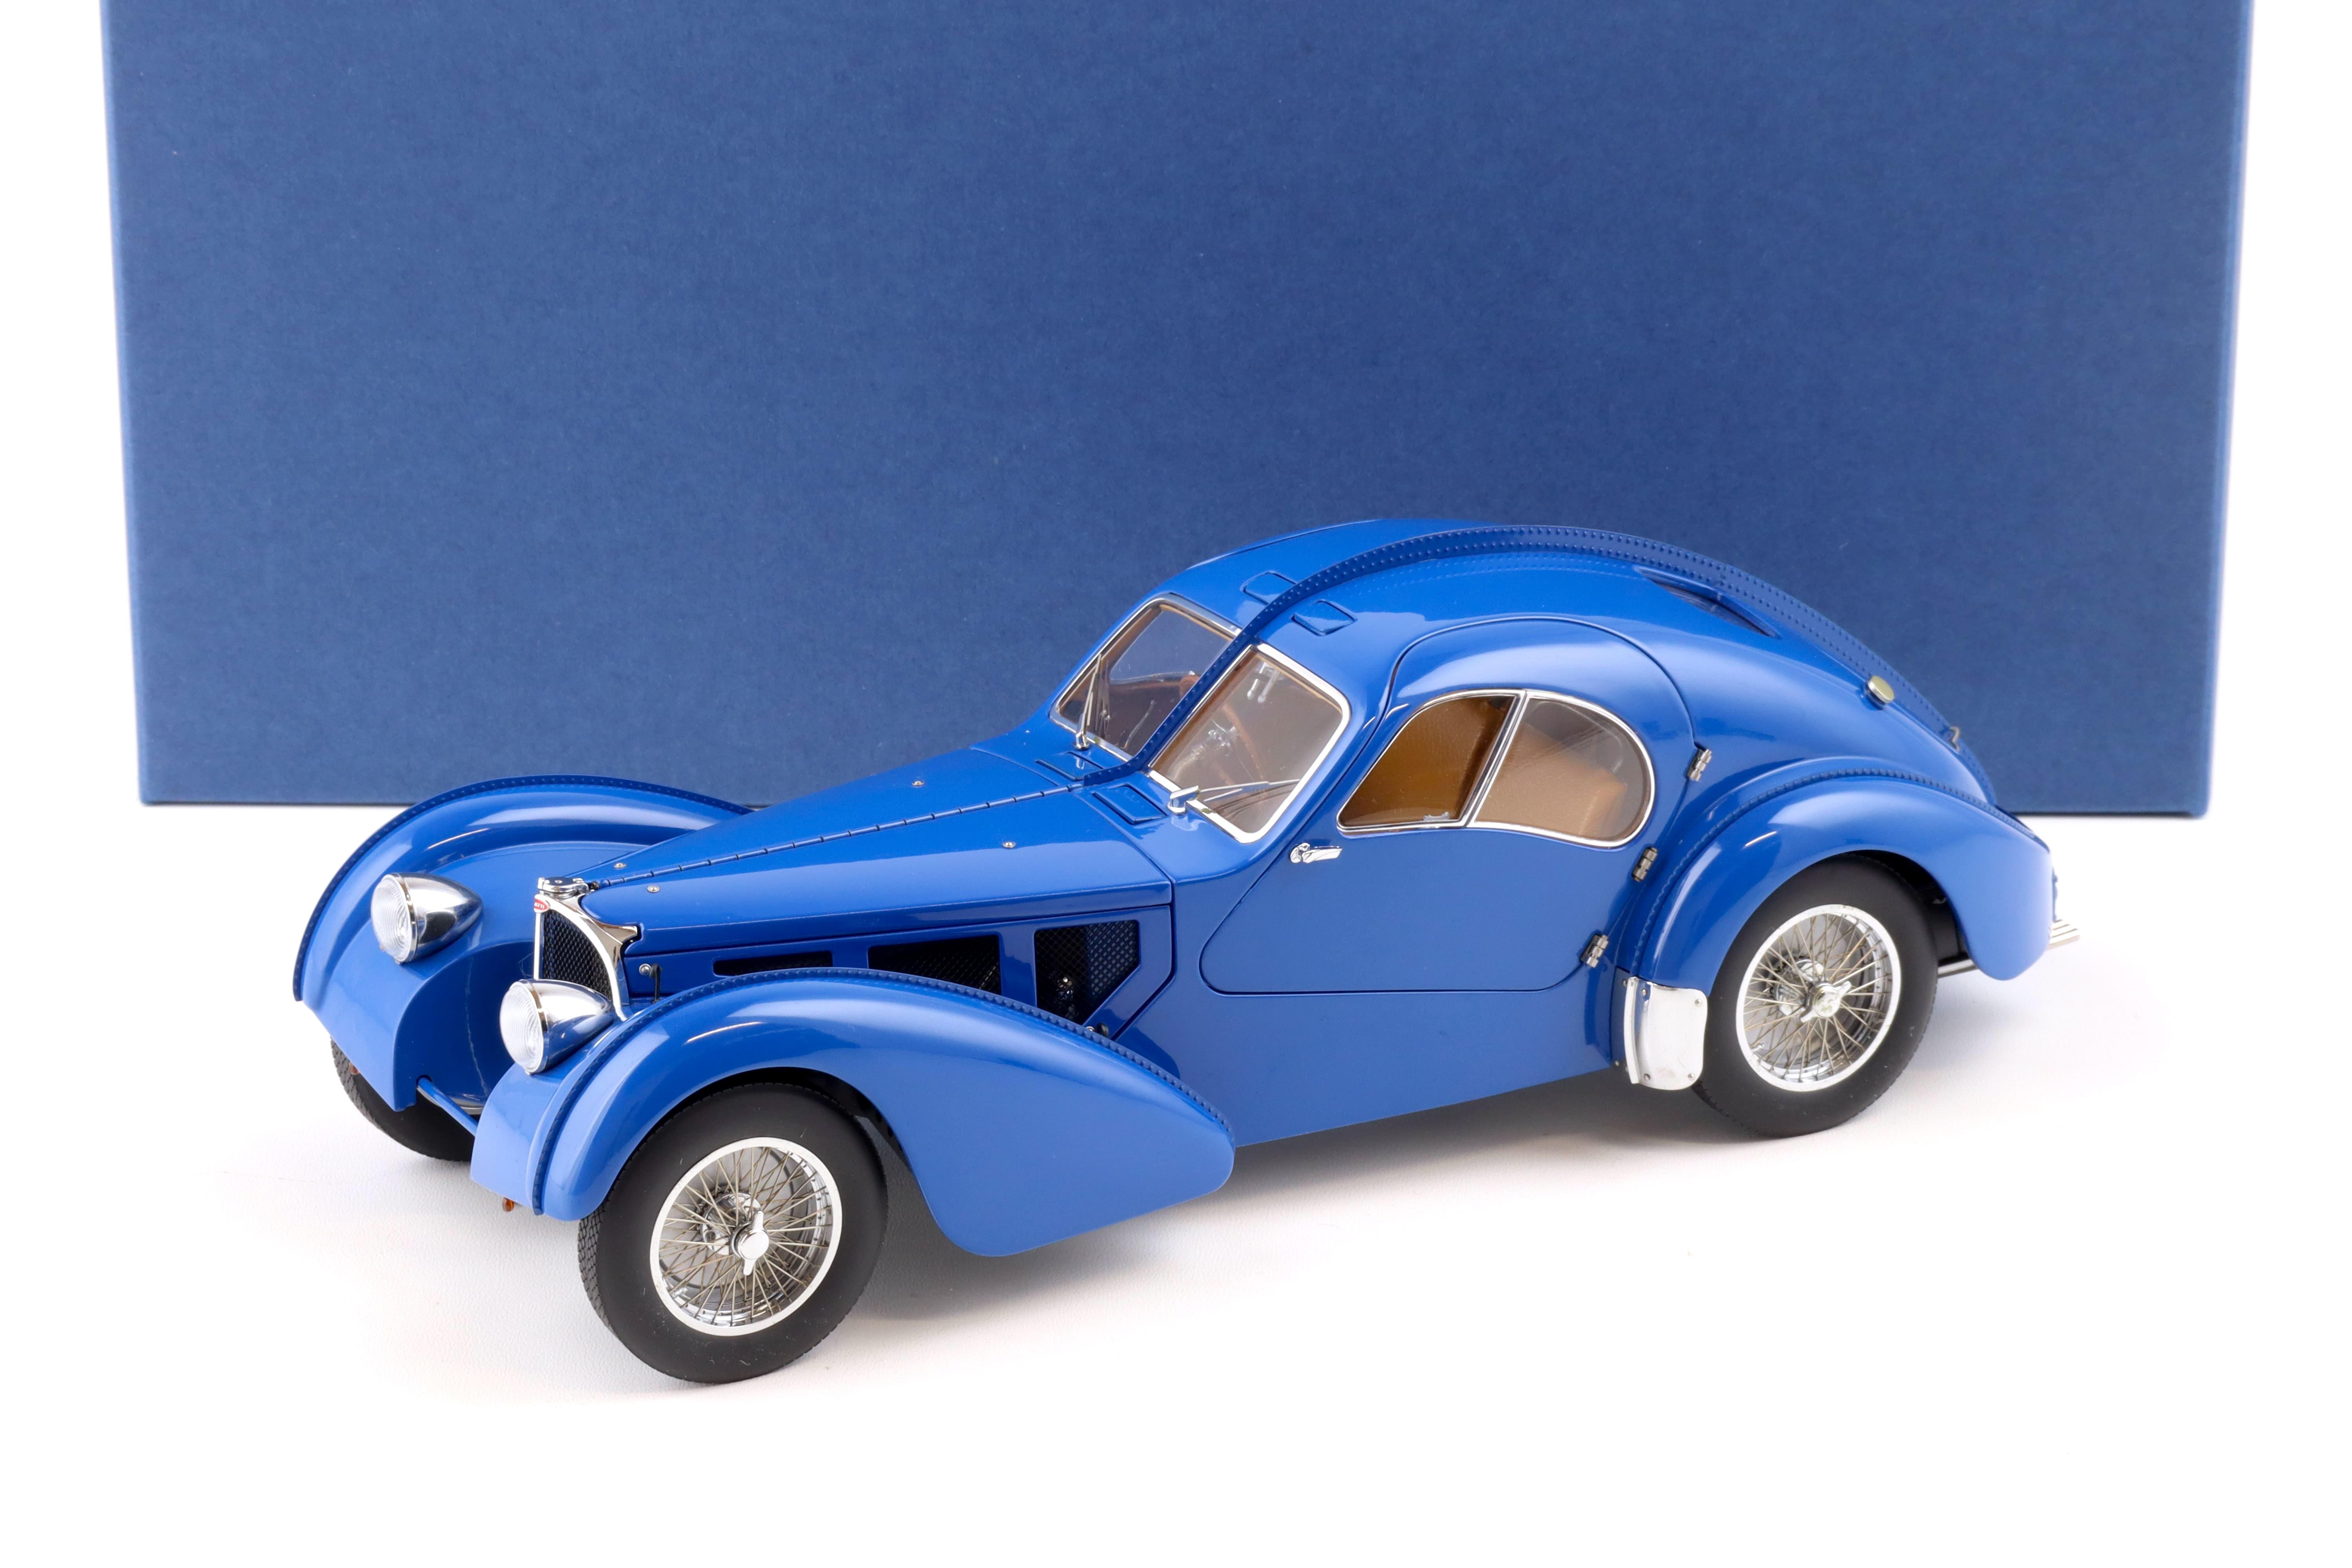 1:18 AUTOart Bugatti 57S Atlantic 1938 blue/ with metal wire spoke wheels 70943